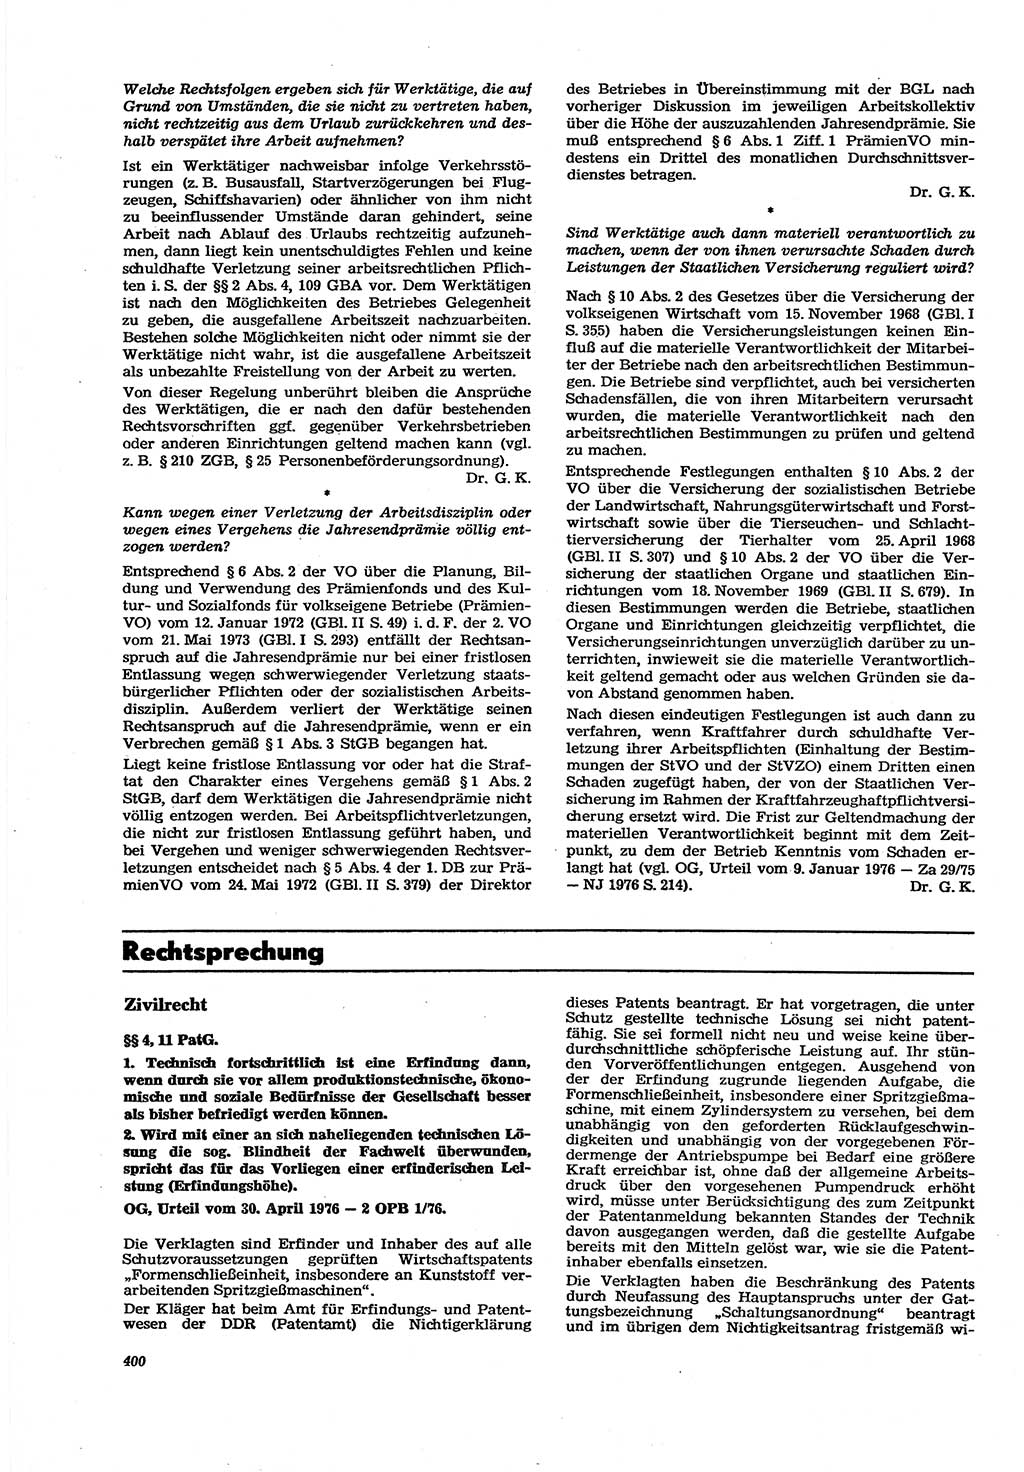 Neue Justiz (NJ), Zeitschrift für Recht und Rechtswissenschaft [Deutsche Demokratische Republik (DDR)], 30. Jahrgang 1976, Seite 400 (NJ DDR 1976, S. 400)